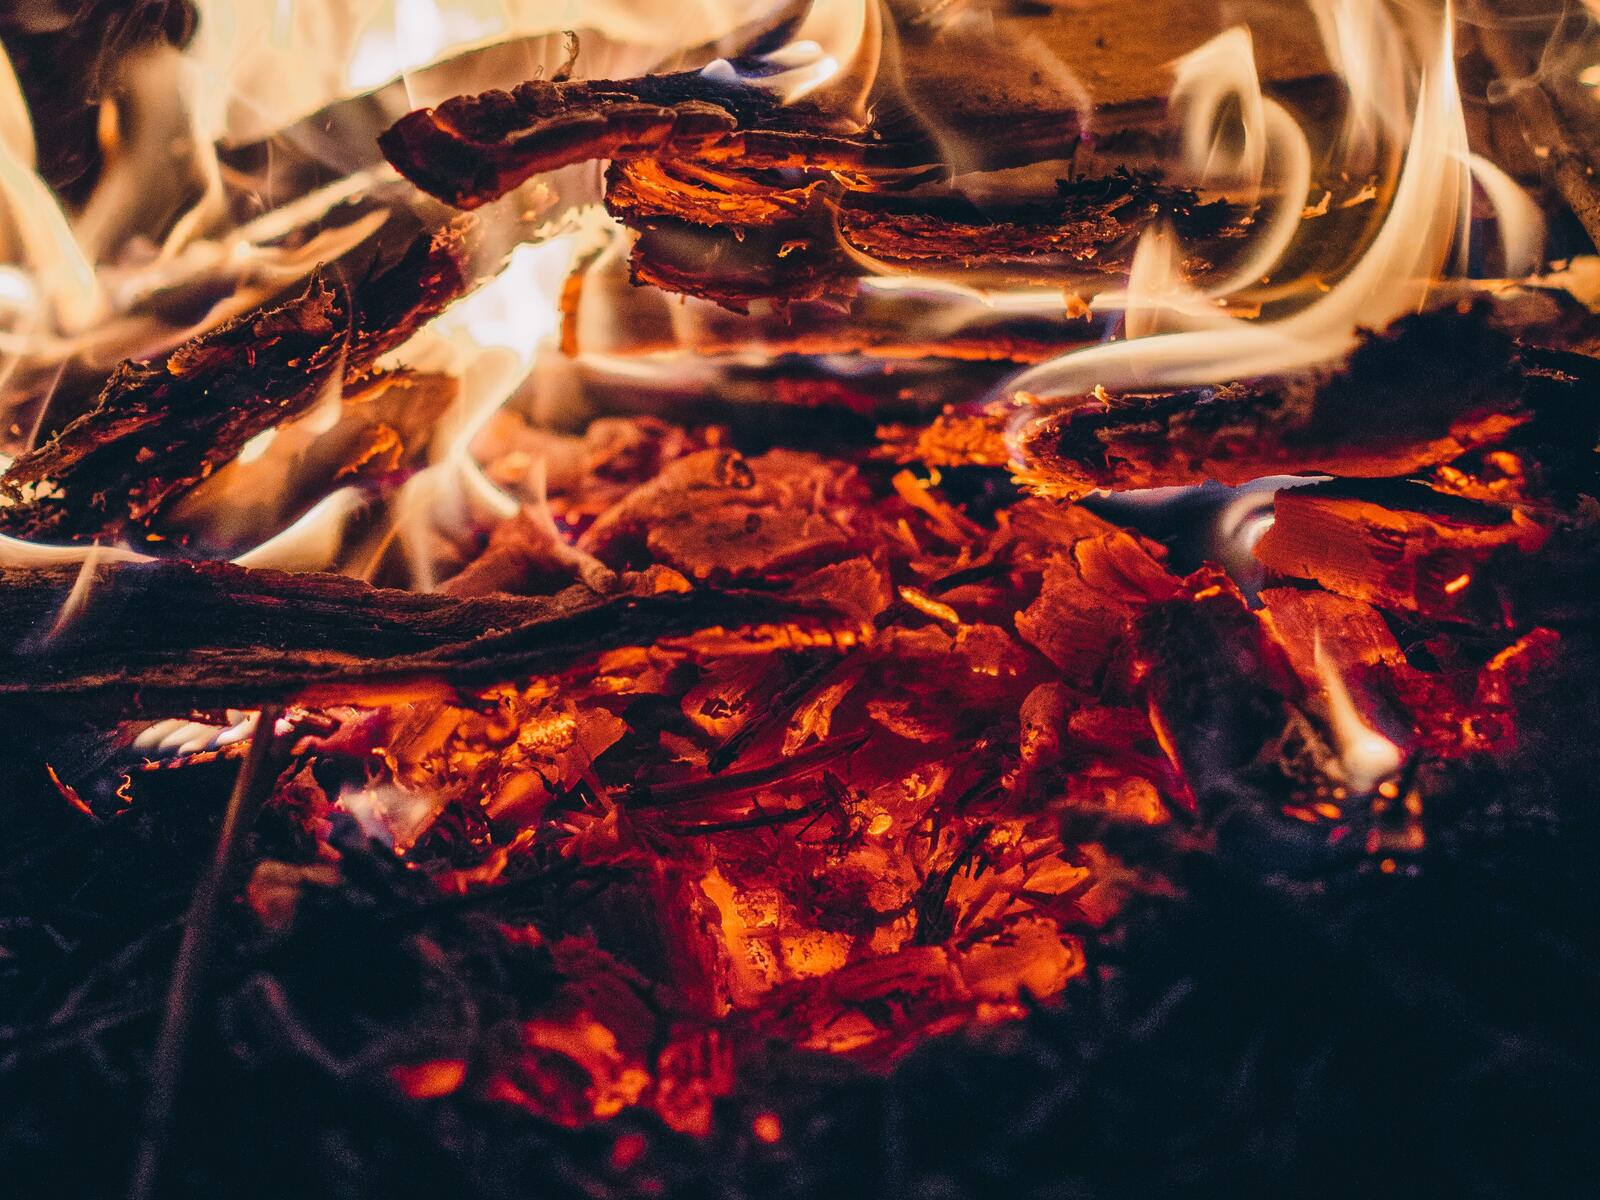 Бесплатное фото Деревяшки тлеющие в огне